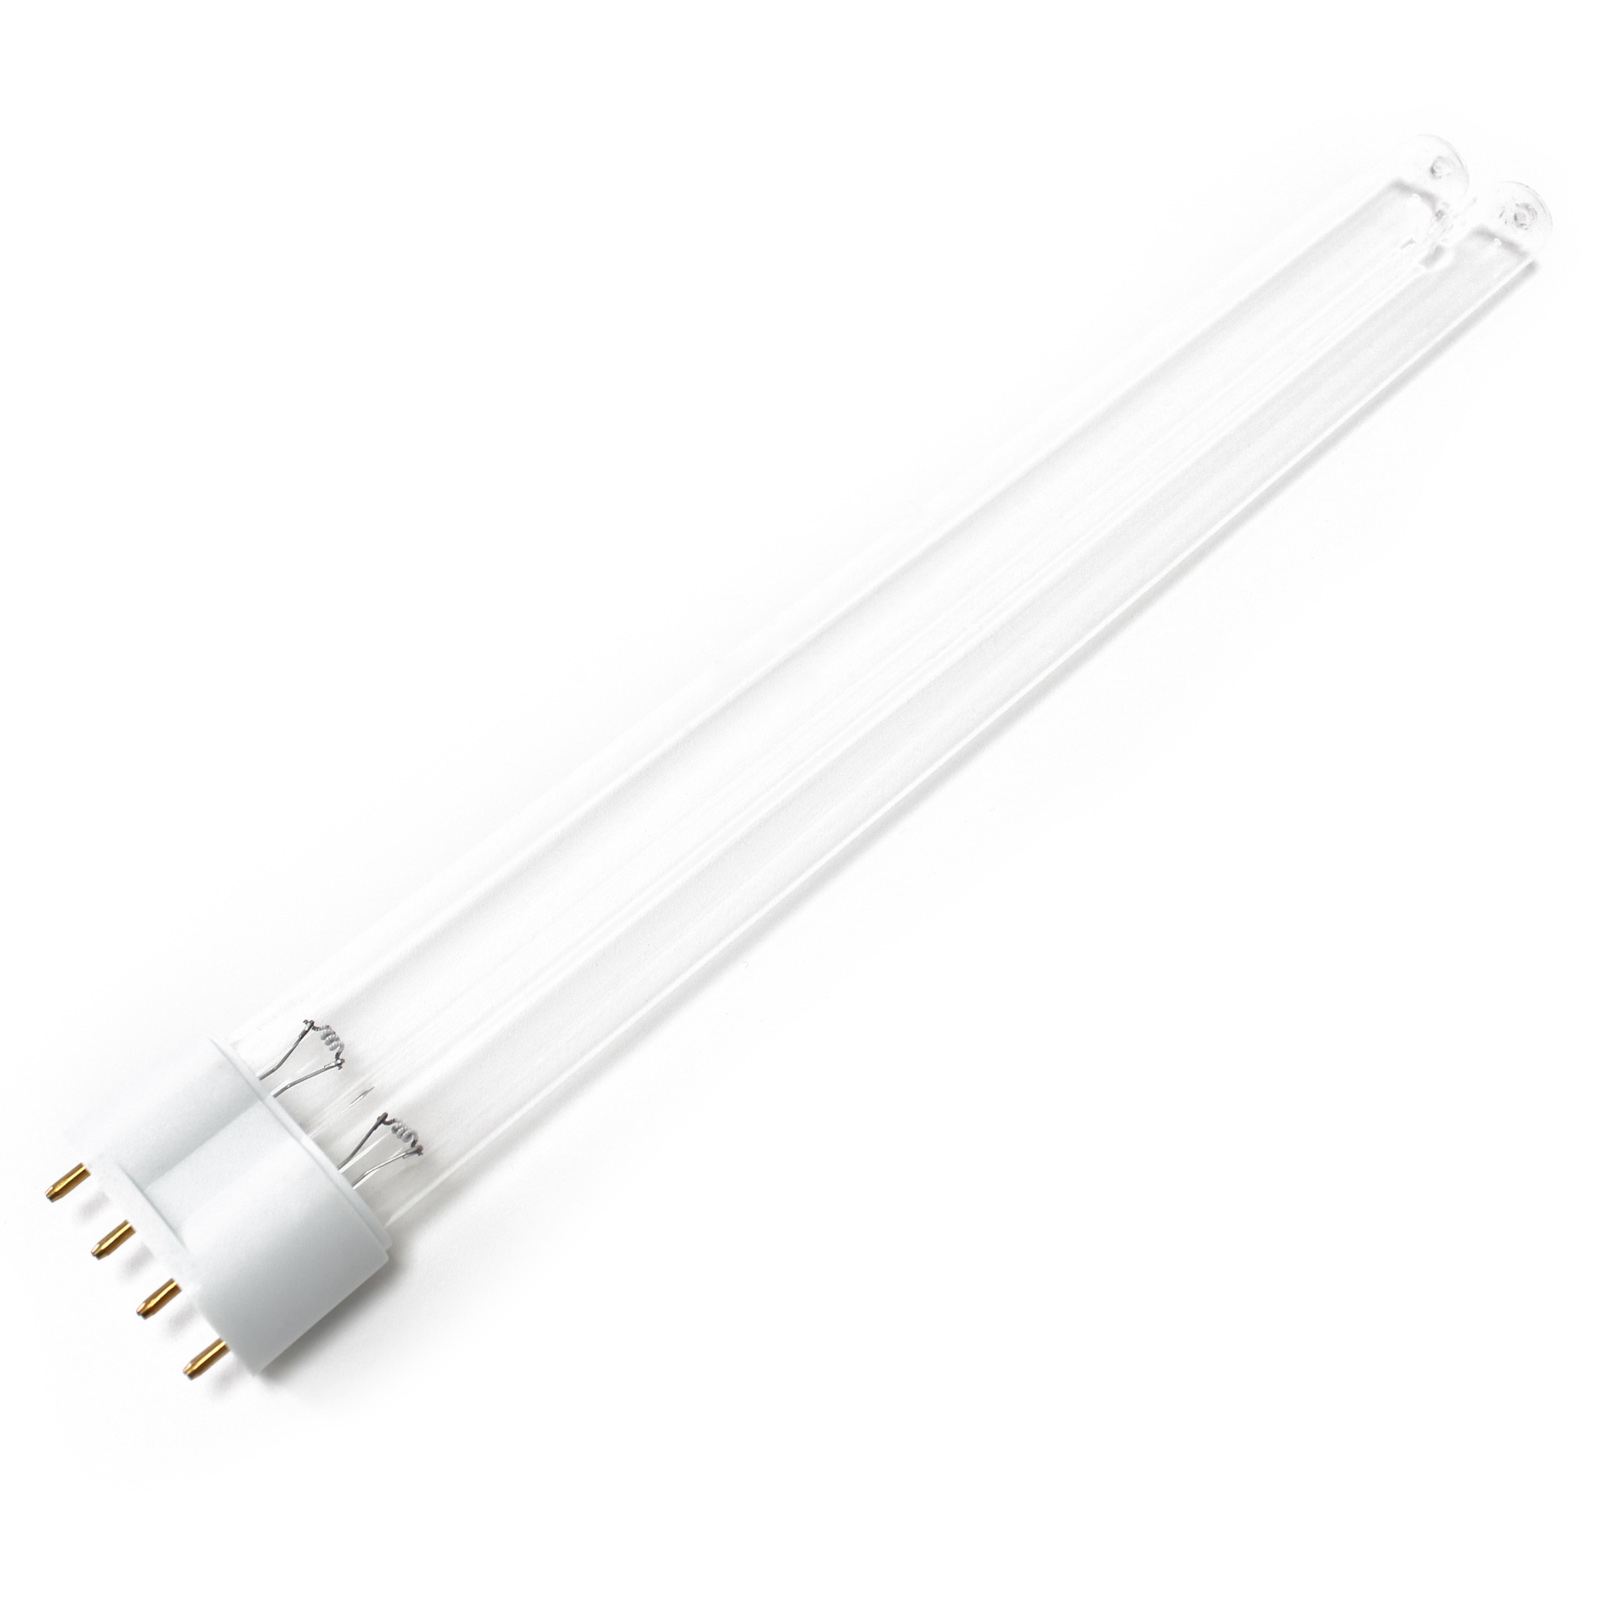 CUV-636 UV-C Lampe Röhre 36W Teich-Klärer UVC Leuchtmittel